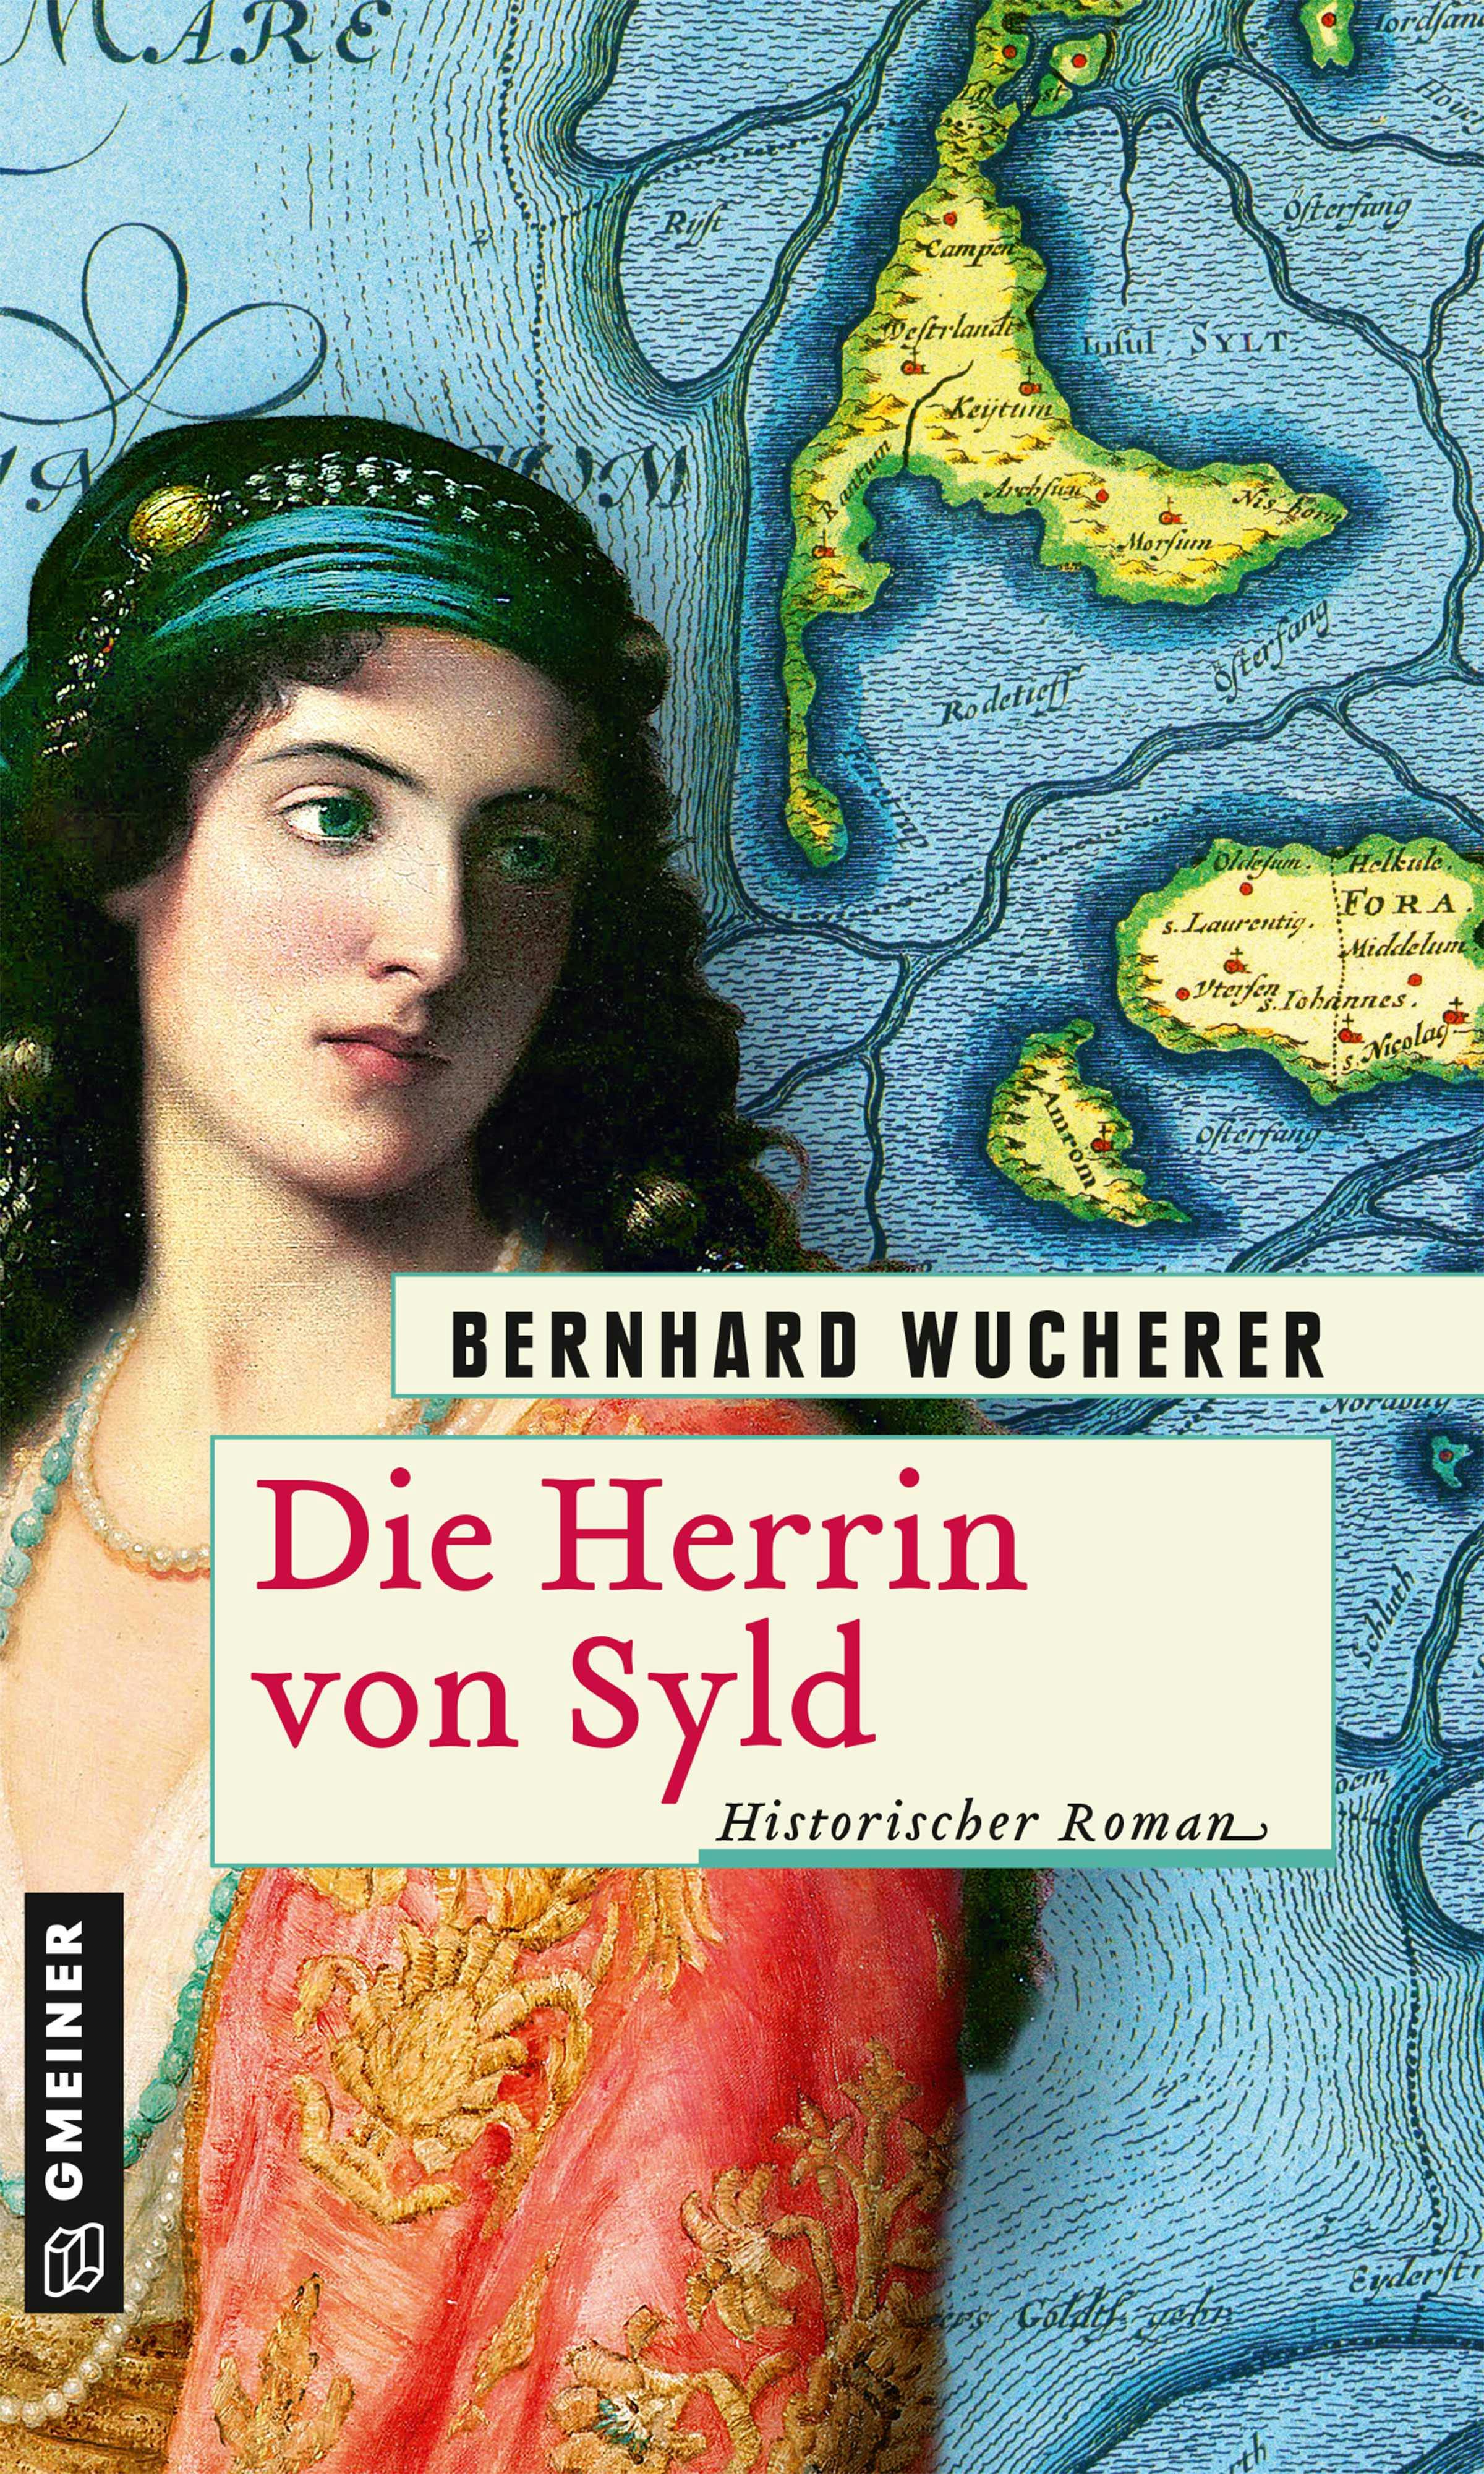 Die Herrin von Syld - Bernhard Wucherer